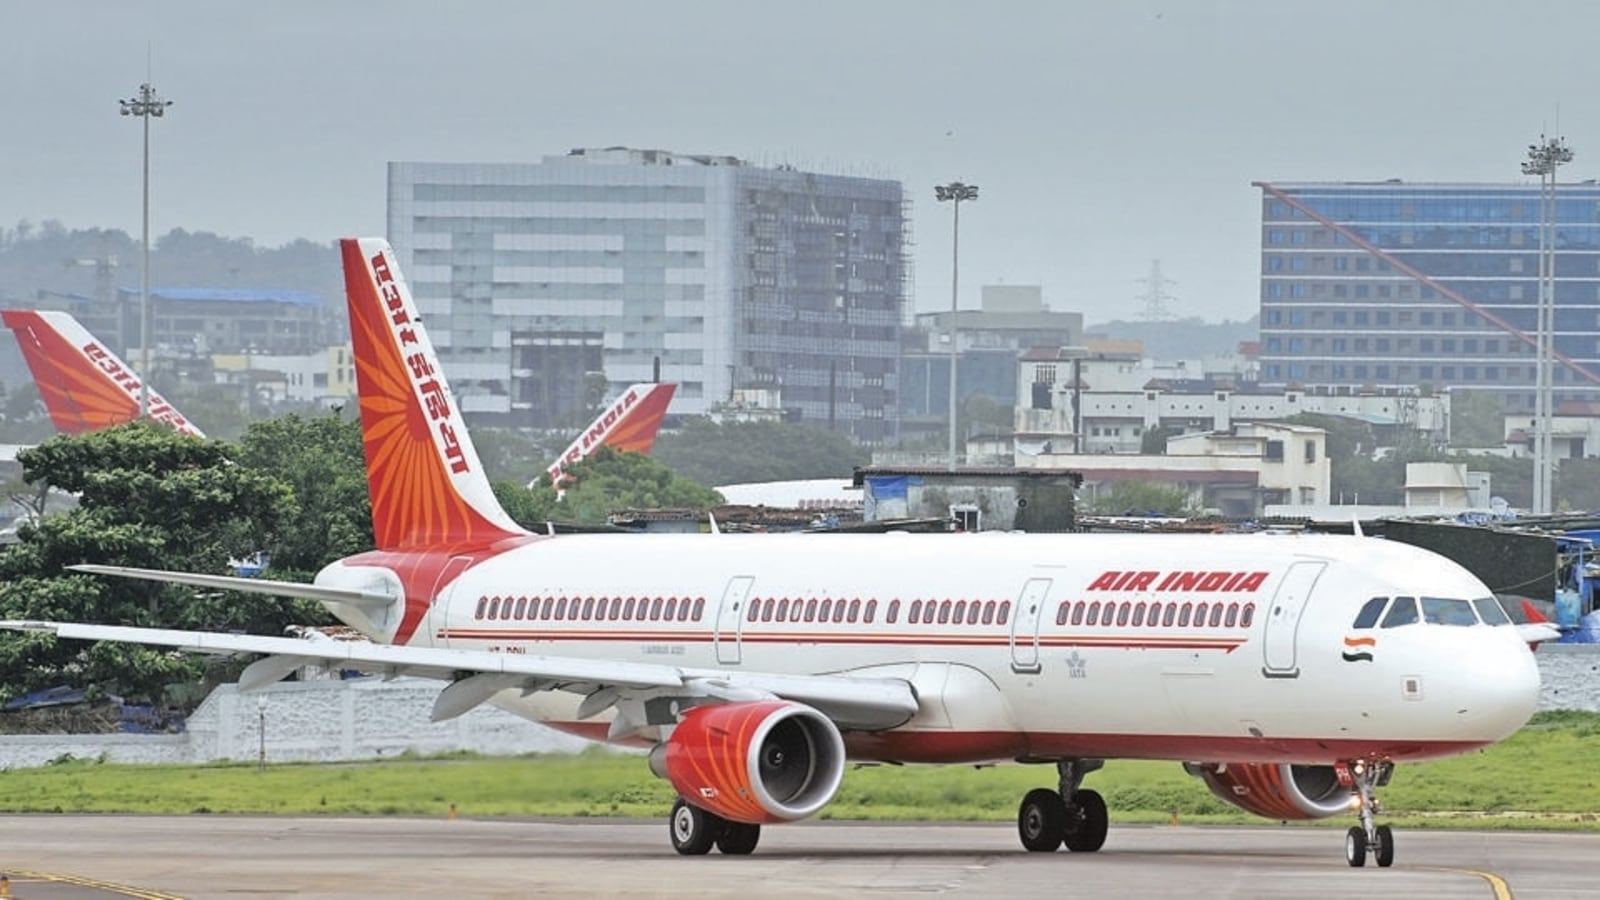 Air India की फ्लाइट में महिला पर पेशाब करने वाला युवक गिरफ्तार- Man arrested for urinating on woman in Air India flight